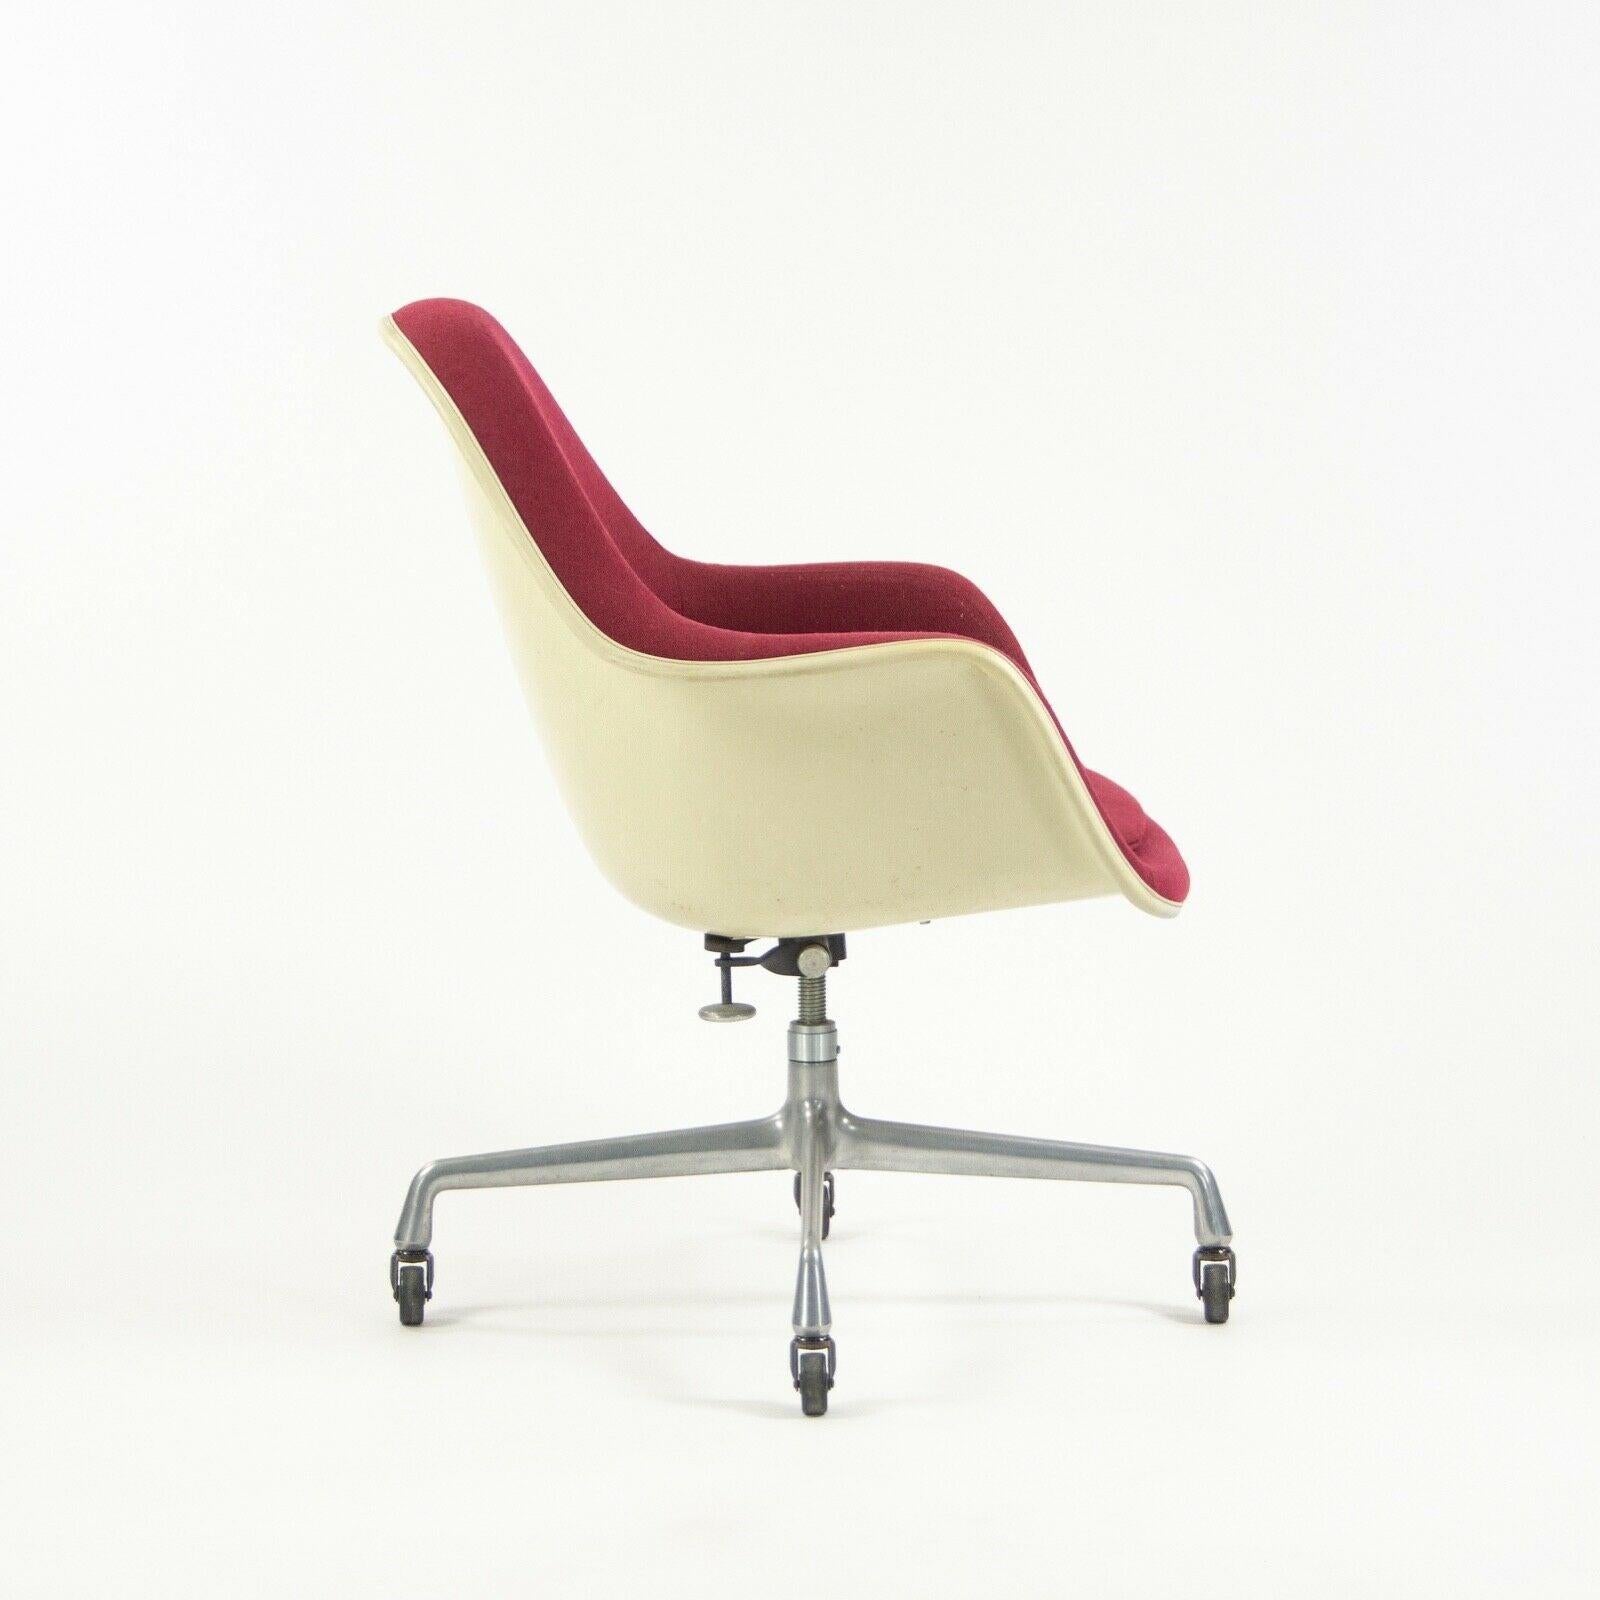 Modern 1977 Eames Herman Miller EC175 Upholstered Fiberglass Shell Chair For Sale